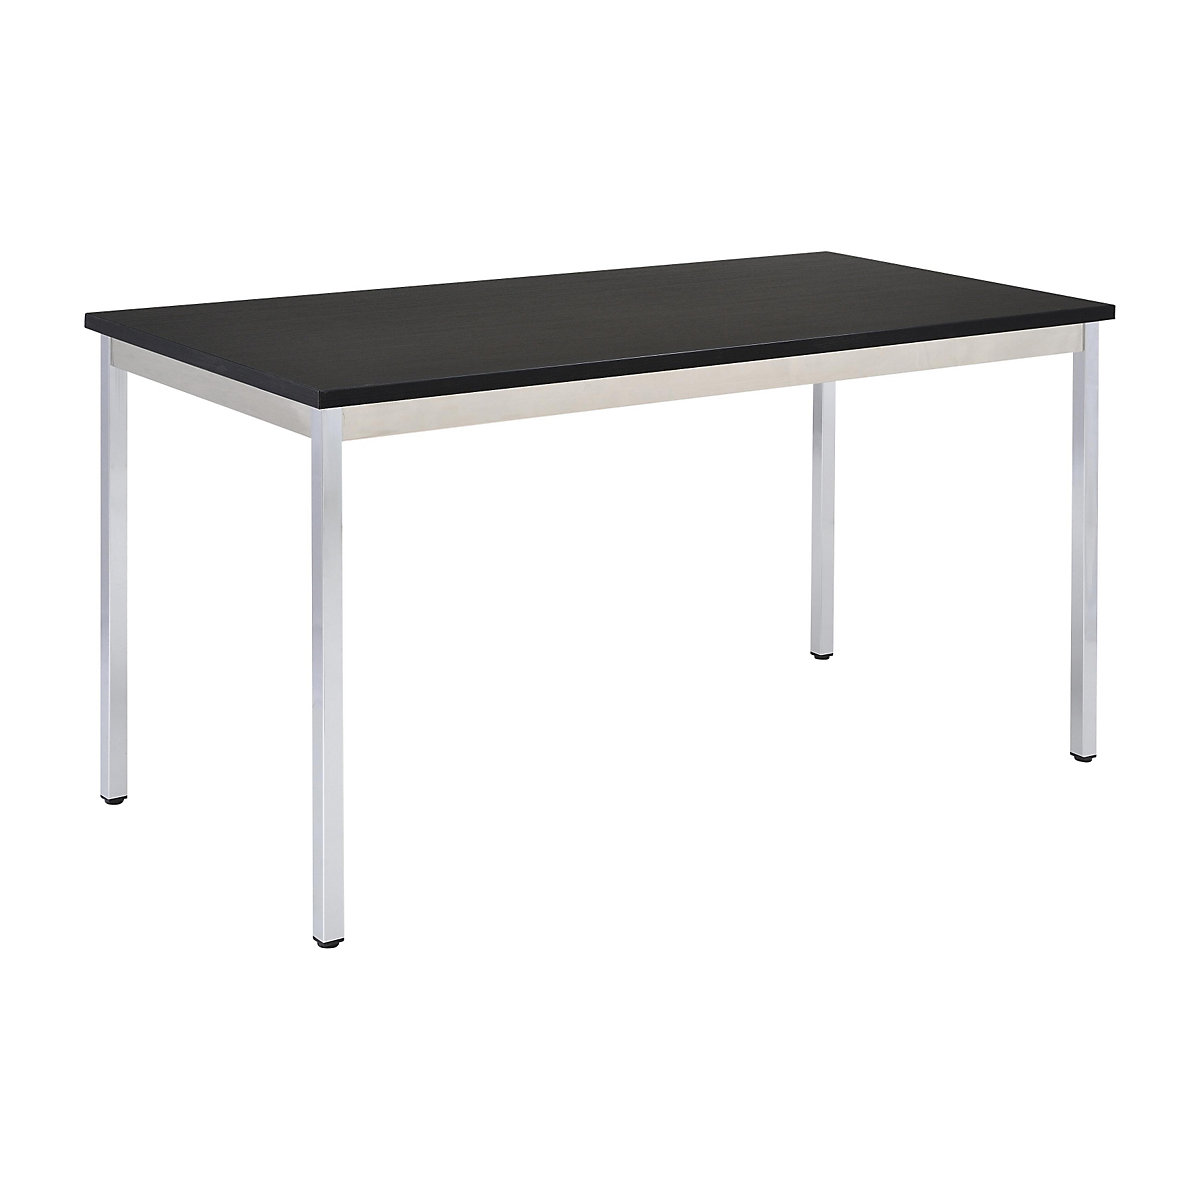 Univerzális asztal – eurokraft basic, négyszög alakú, ma x szé x mé 740 x 700 x 600 mm, fekete lap, krómozott váz-14